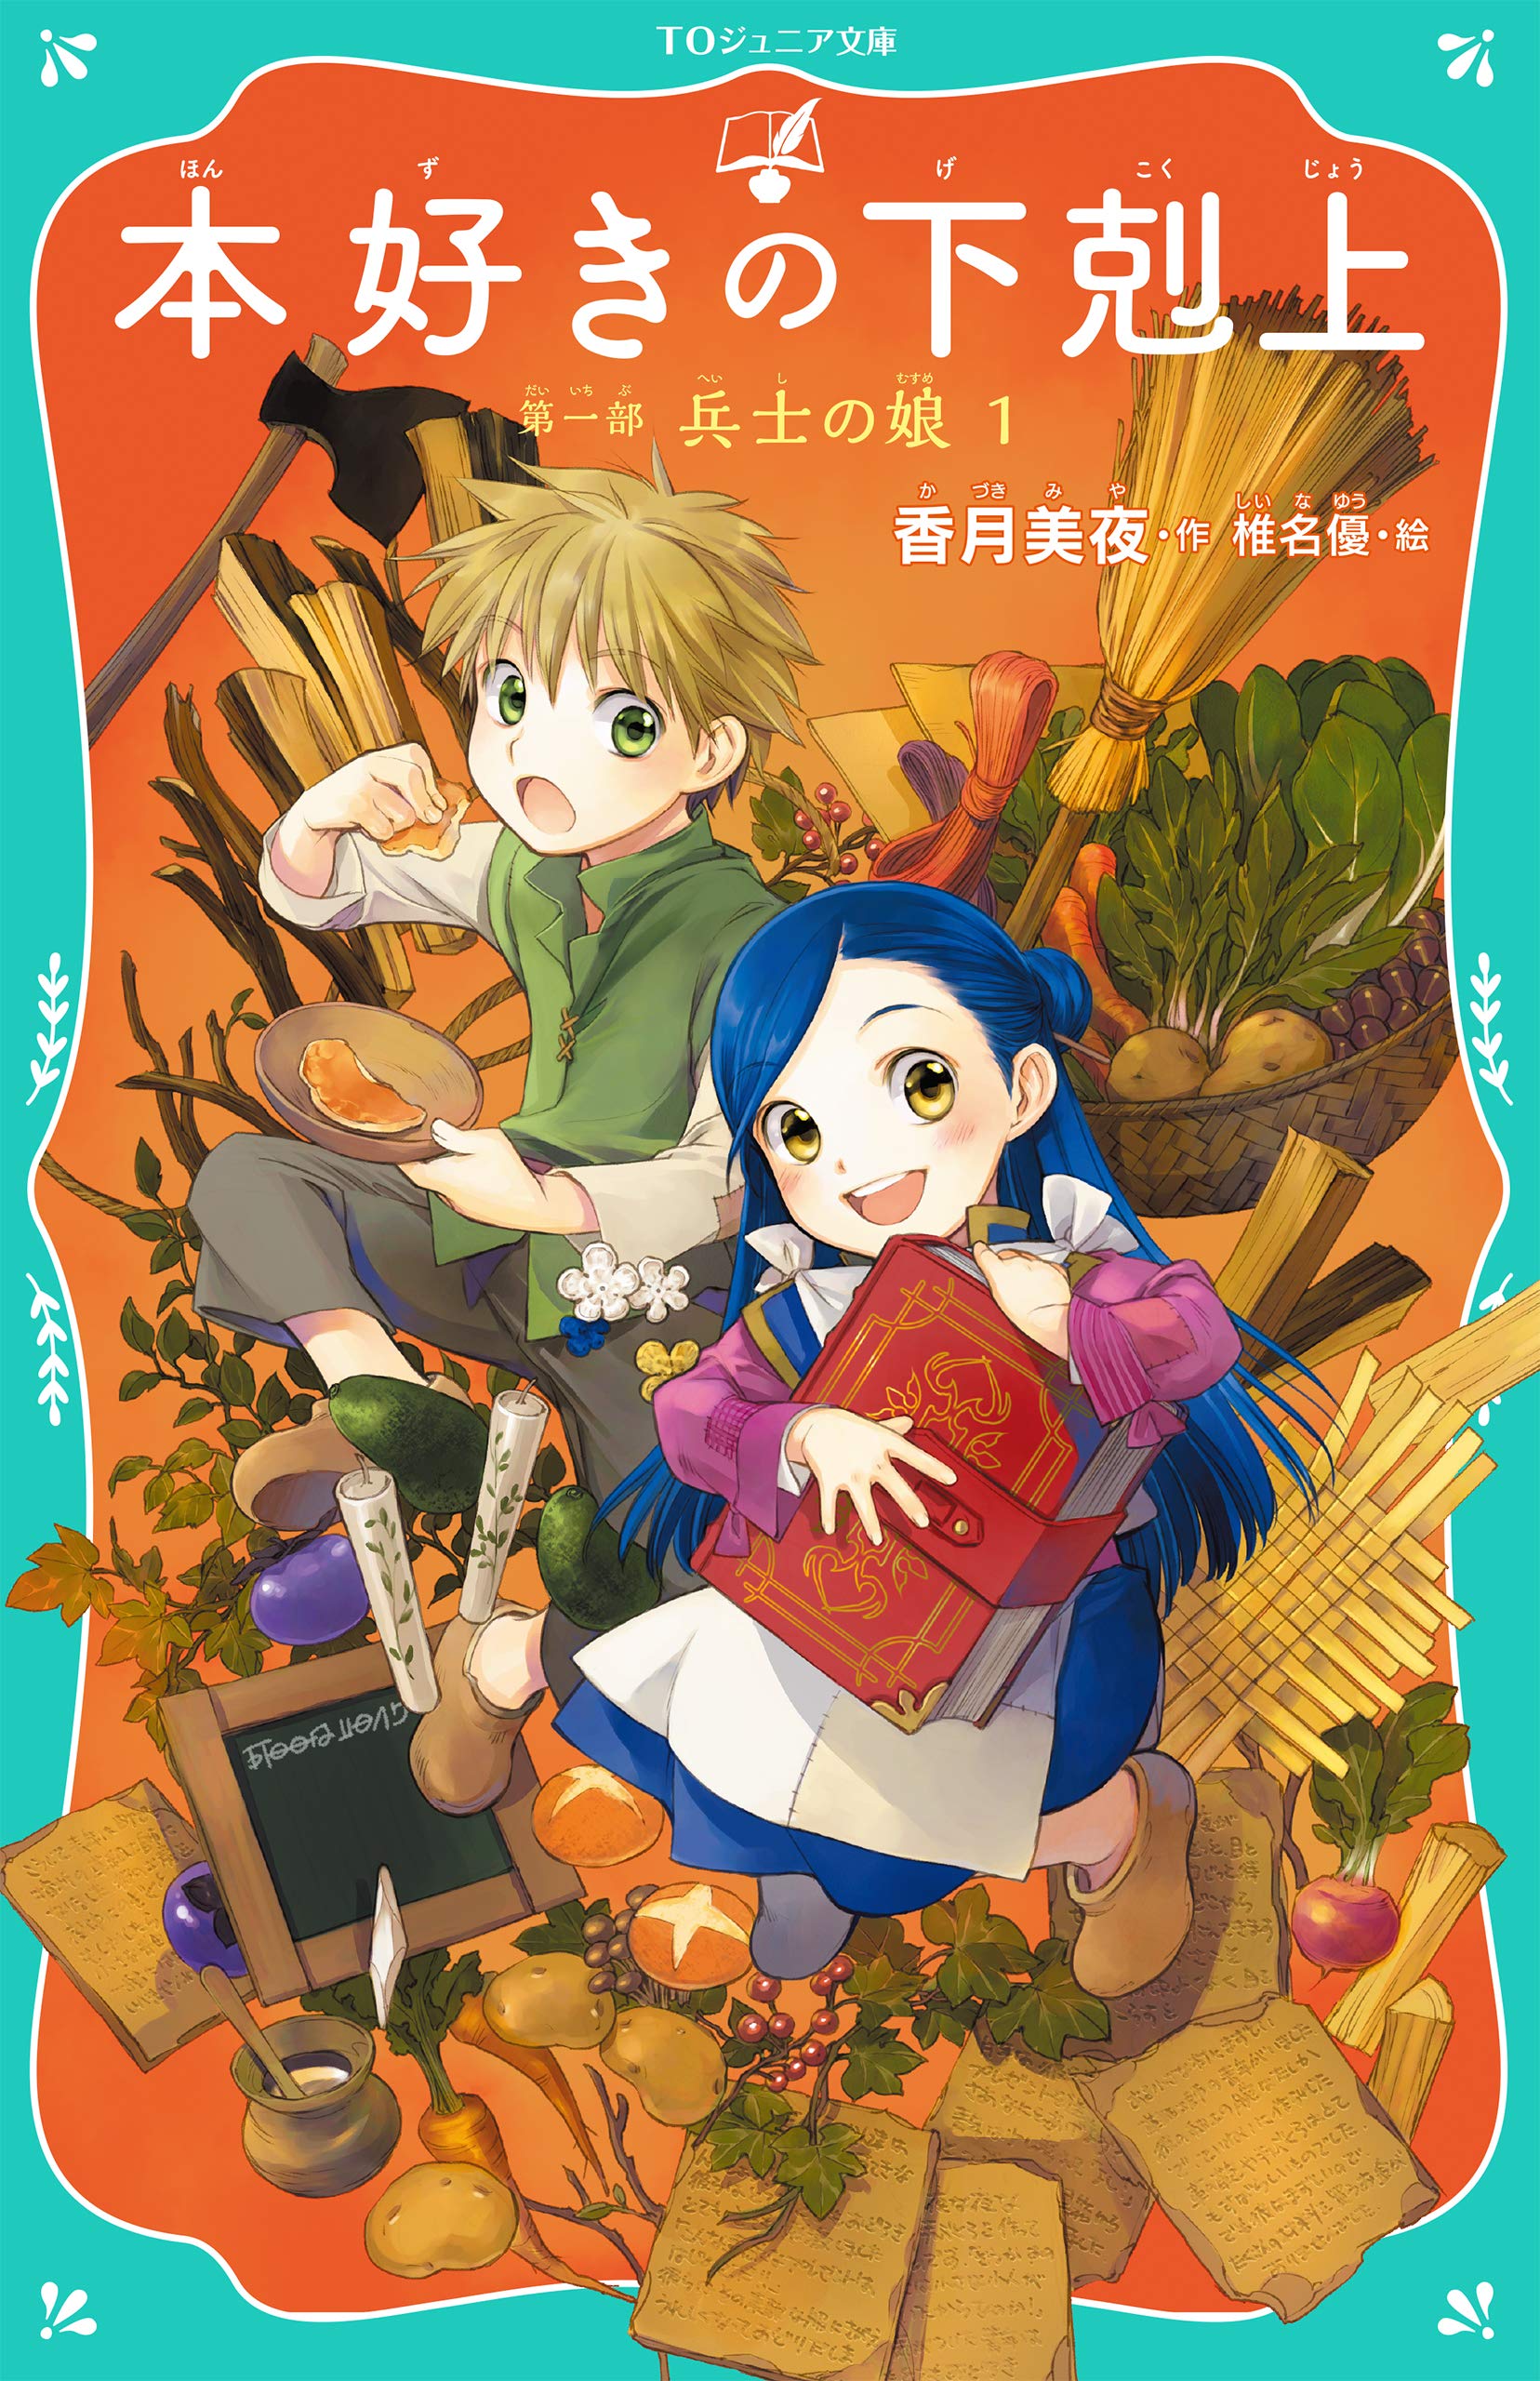 Ascendance of a Bookworm Part 1 Manga Book Series